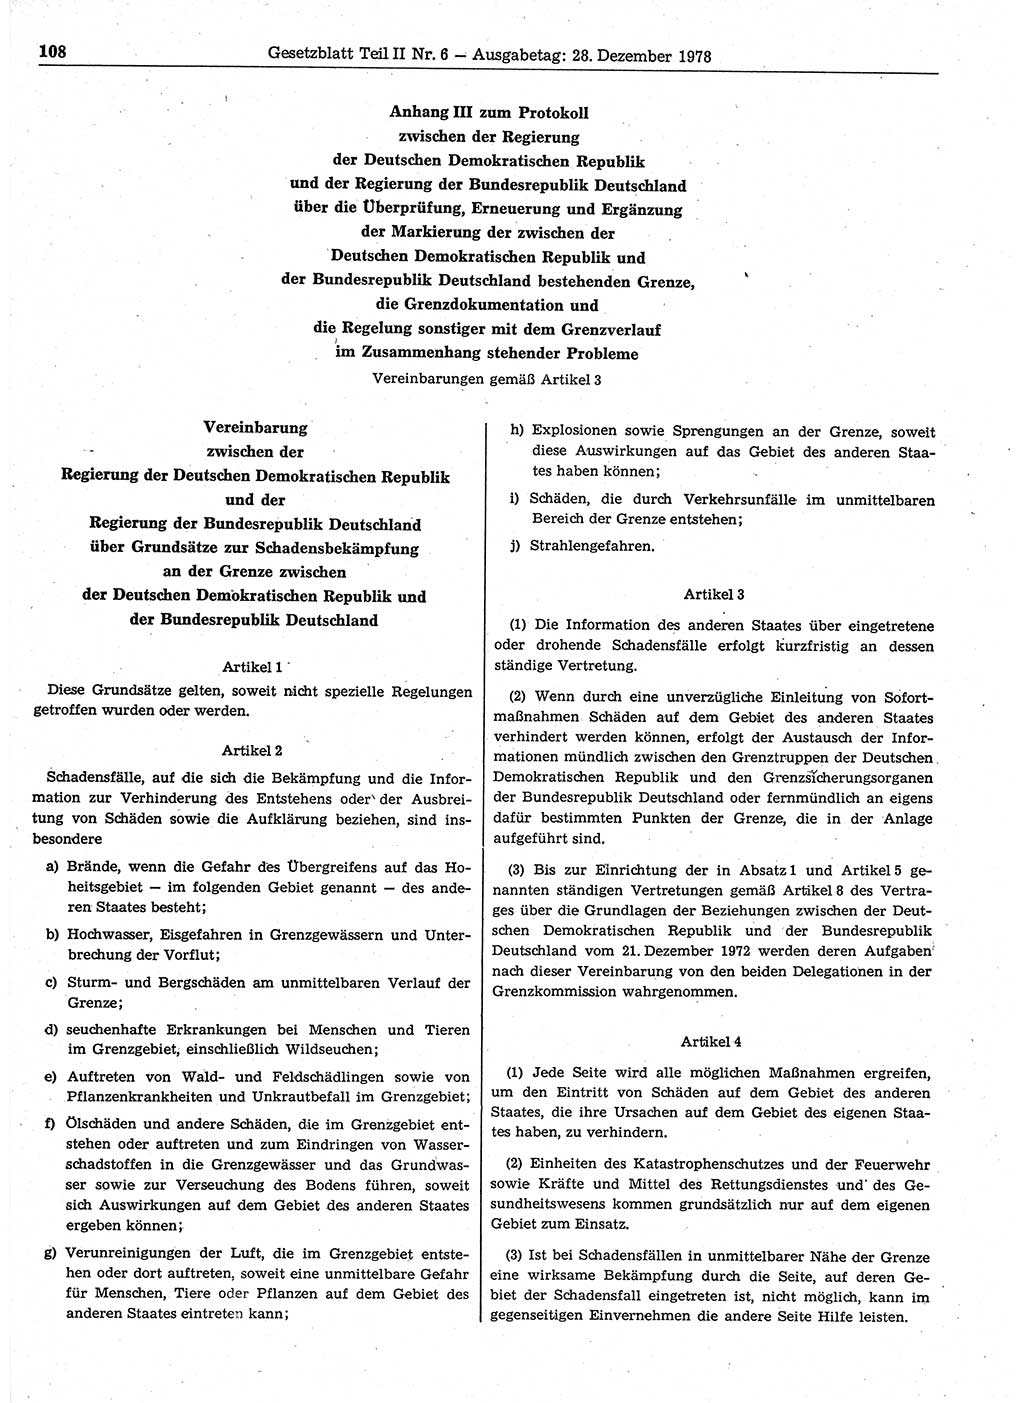 Gesetzblatt (GBl.) der Deutschen Demokratischen Republik (DDR) Teil ⅠⅠ 1978, Seite 108 (GBl. DDR ⅠⅠ 1978, S. 108)